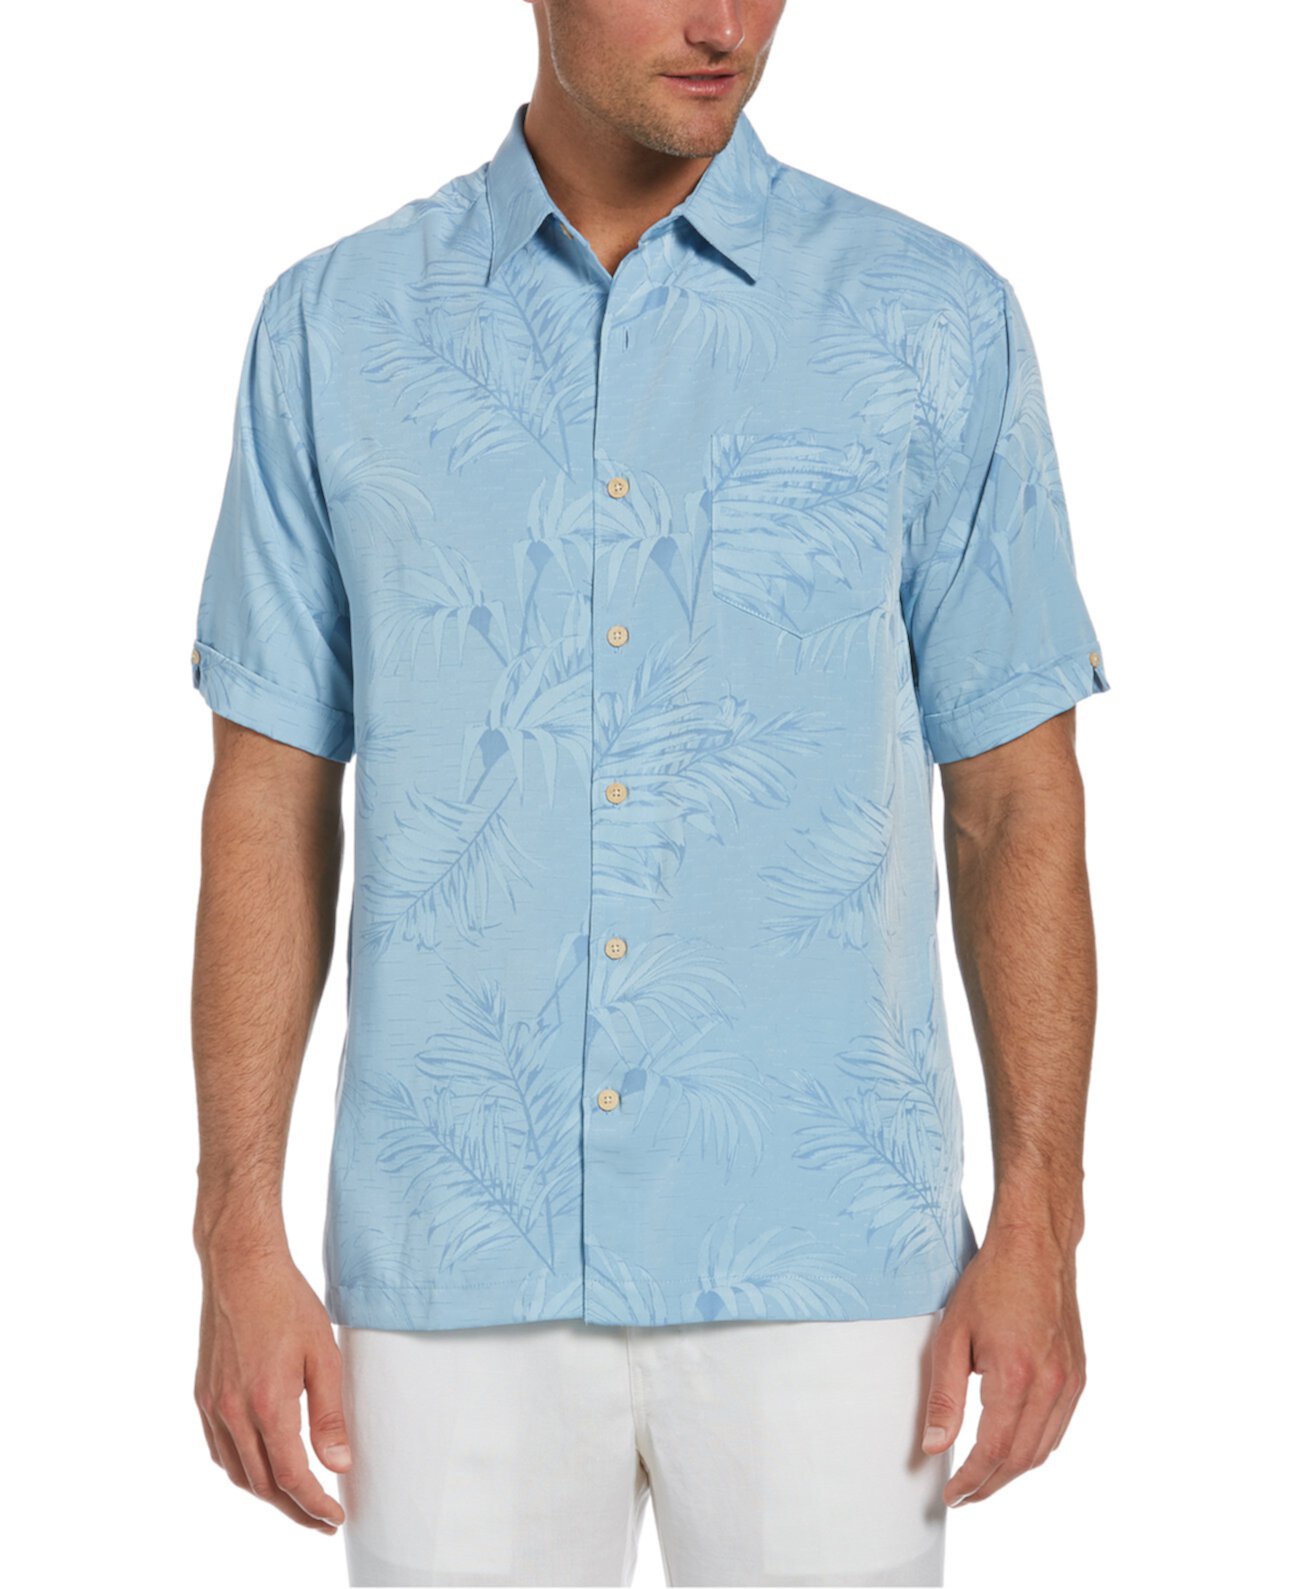 Мужская жаккардовая рубашка с цветочным принтом Big & Tall Cubavera